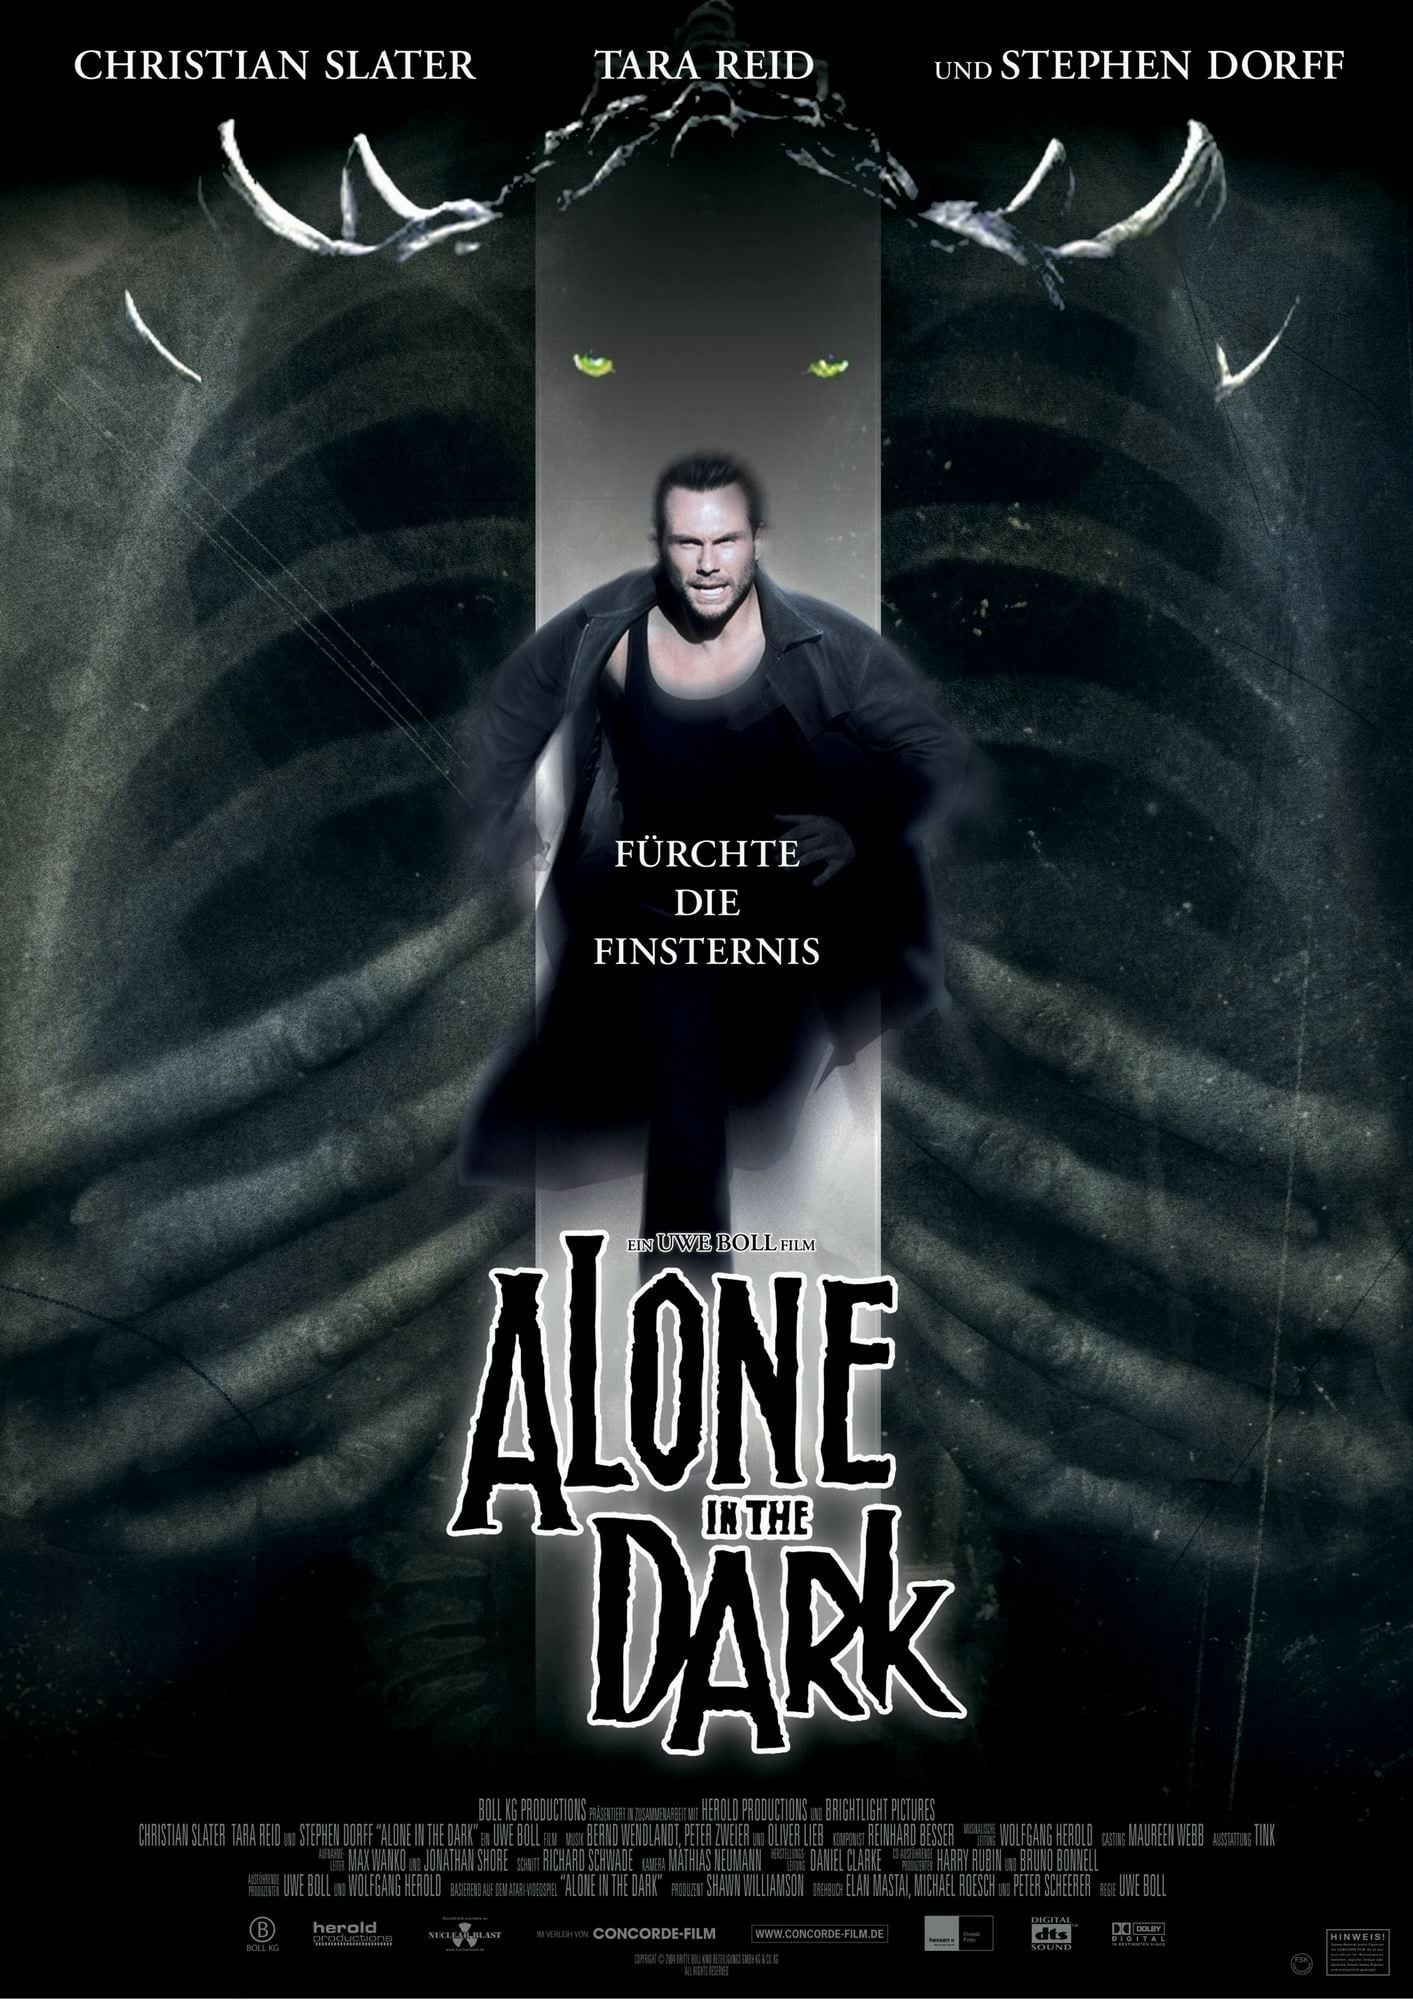 Plakat von "Alone in the Dark"